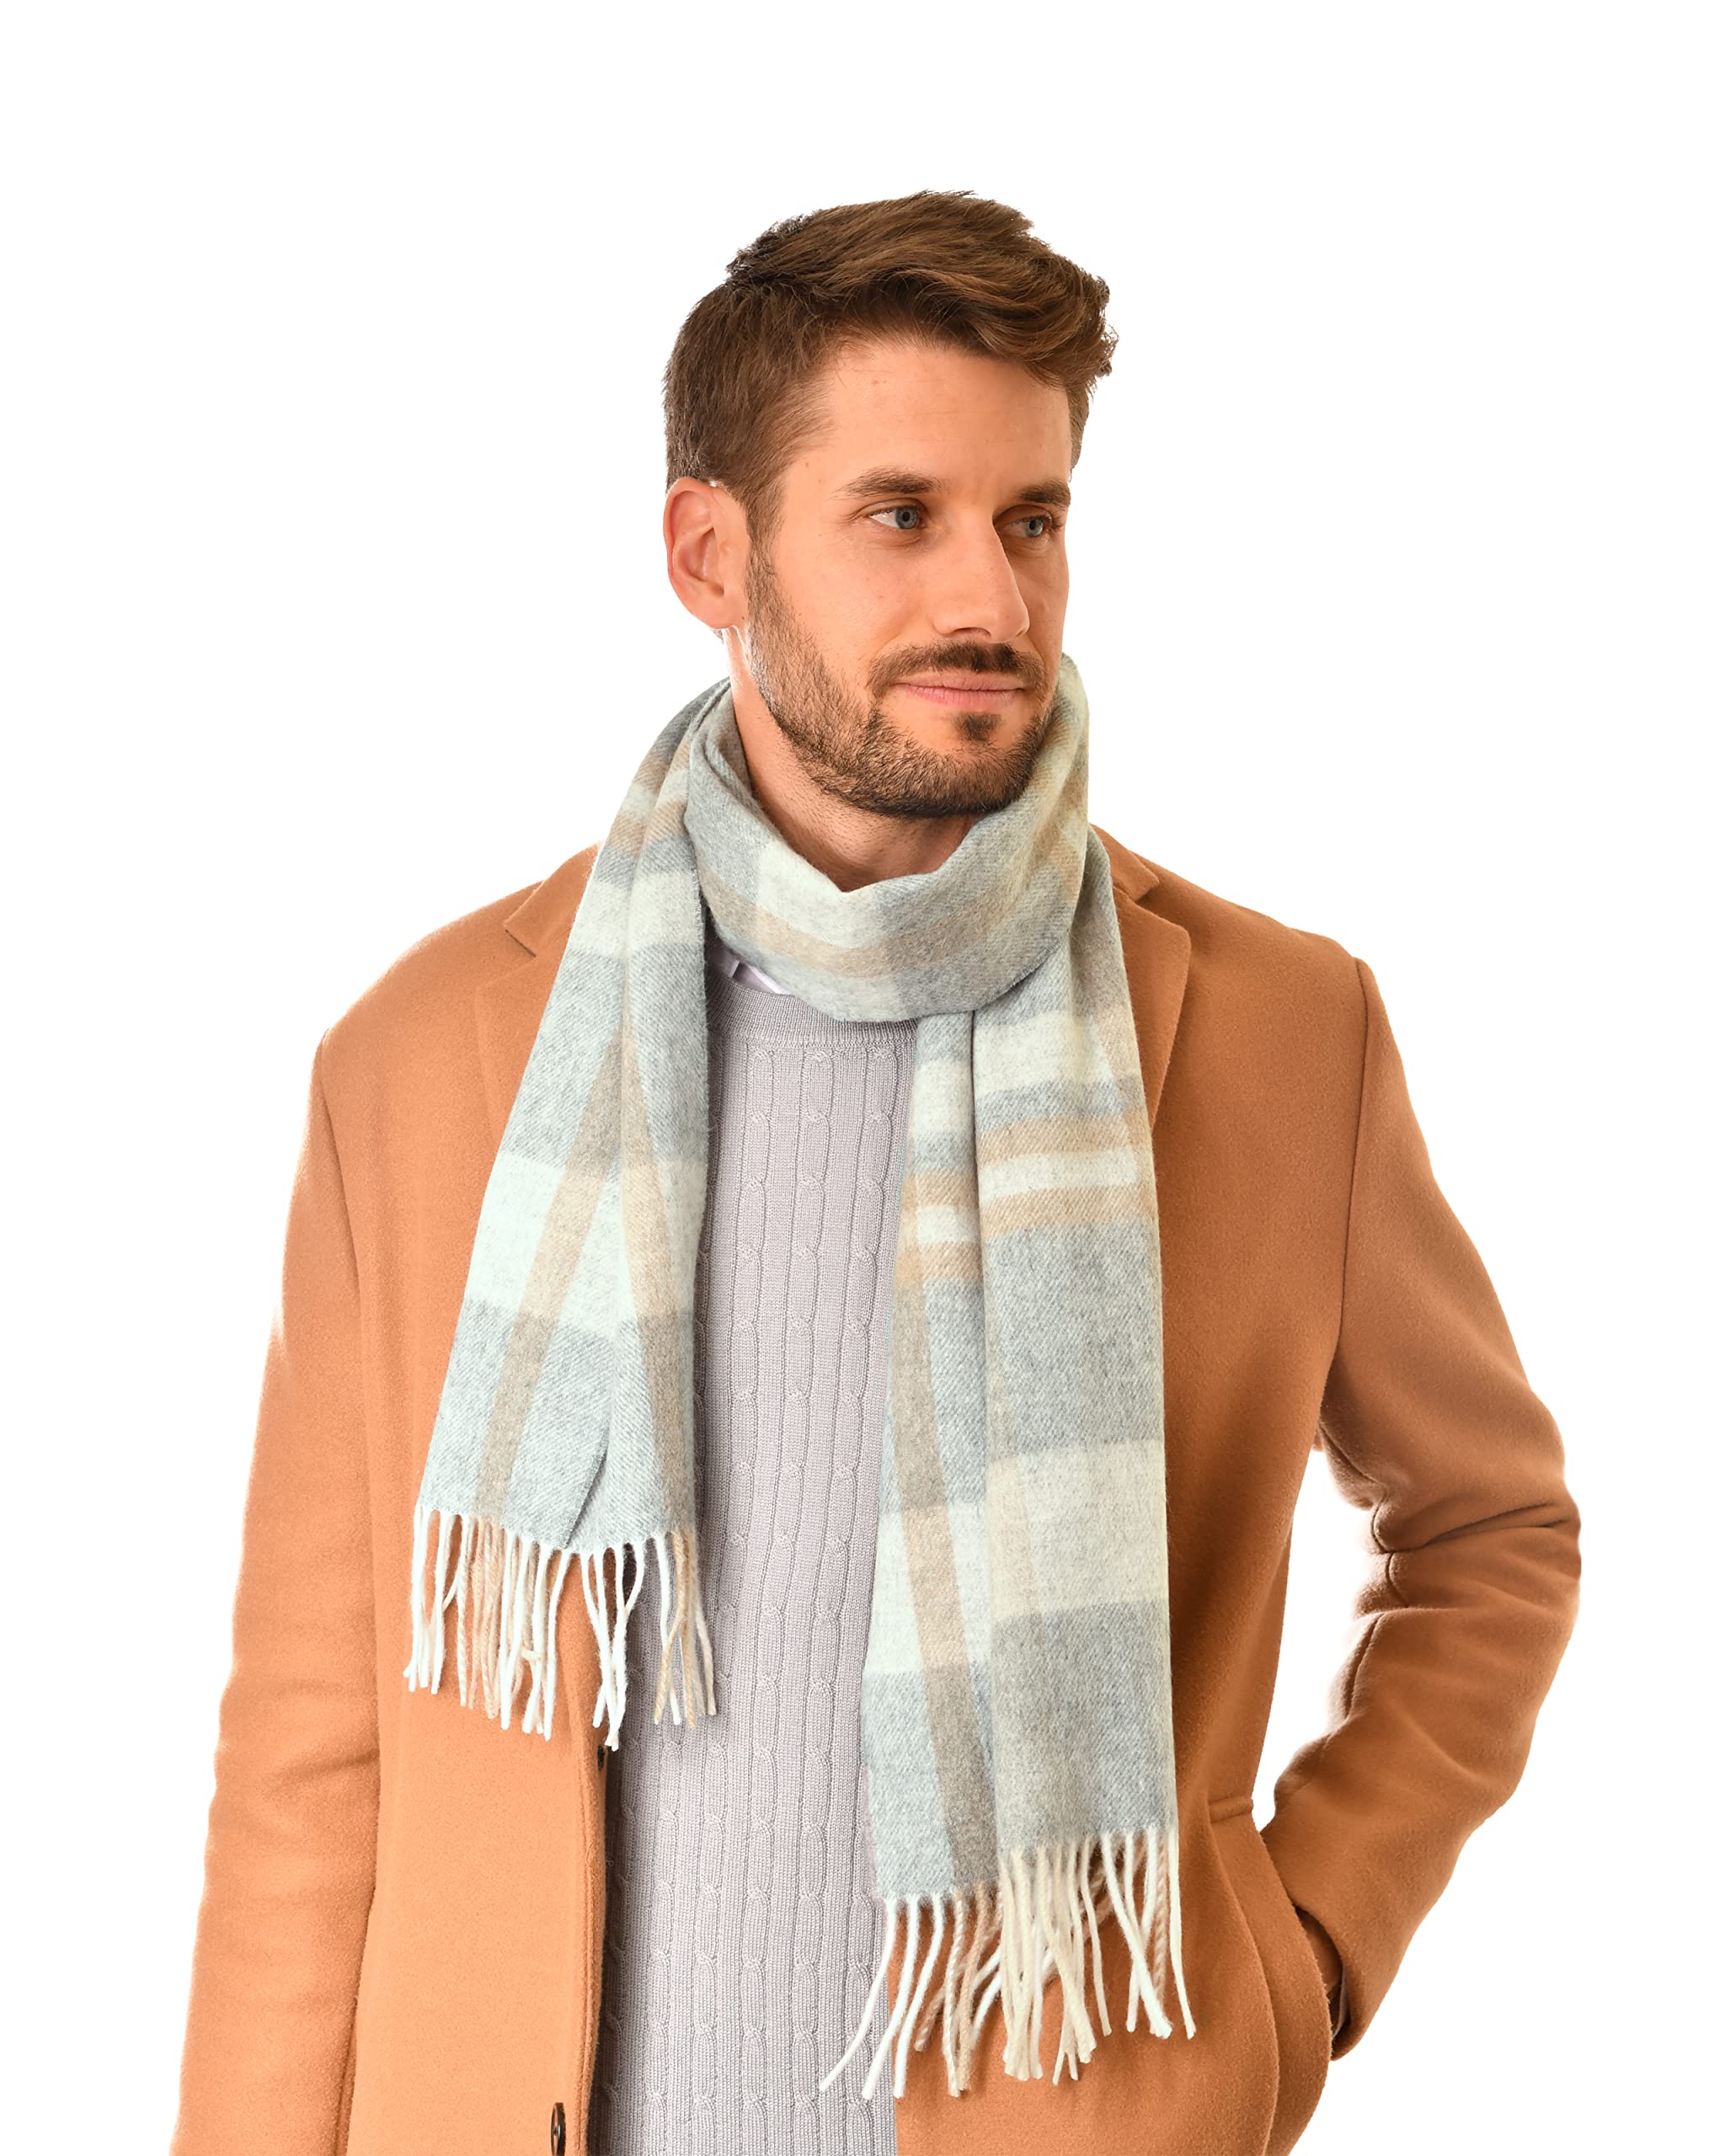 MayTree Kaschmir-Schal in verschiedenen Farben Herren und Damen, Unisex Woll-Schal aus 100% Kaschmir, einfarbig und kariert, 180 x 30 cm (grau beige kariert)